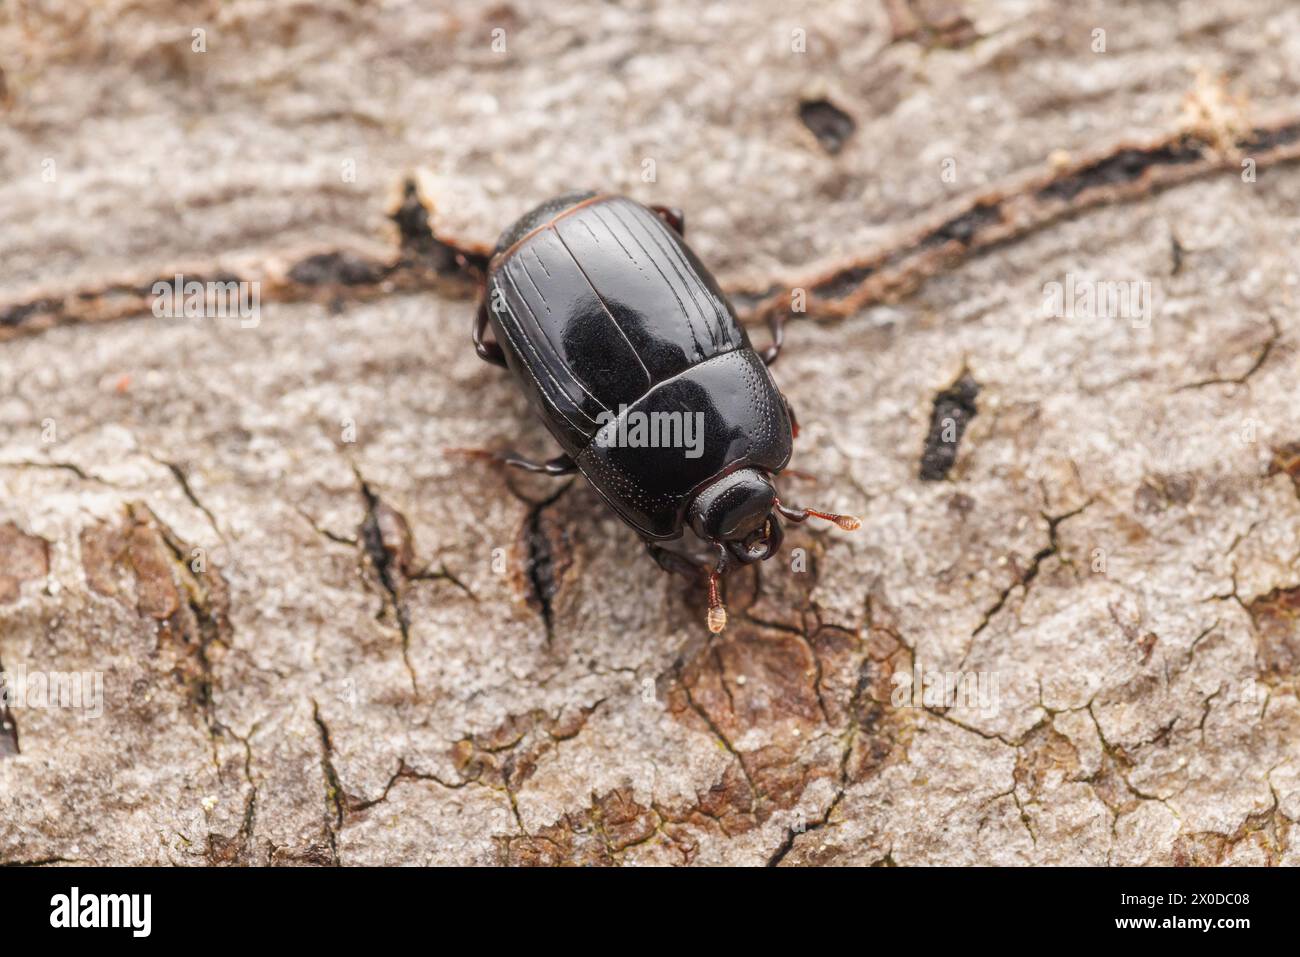 Histerid Beetle (Platysoma sp.) Stock Photo